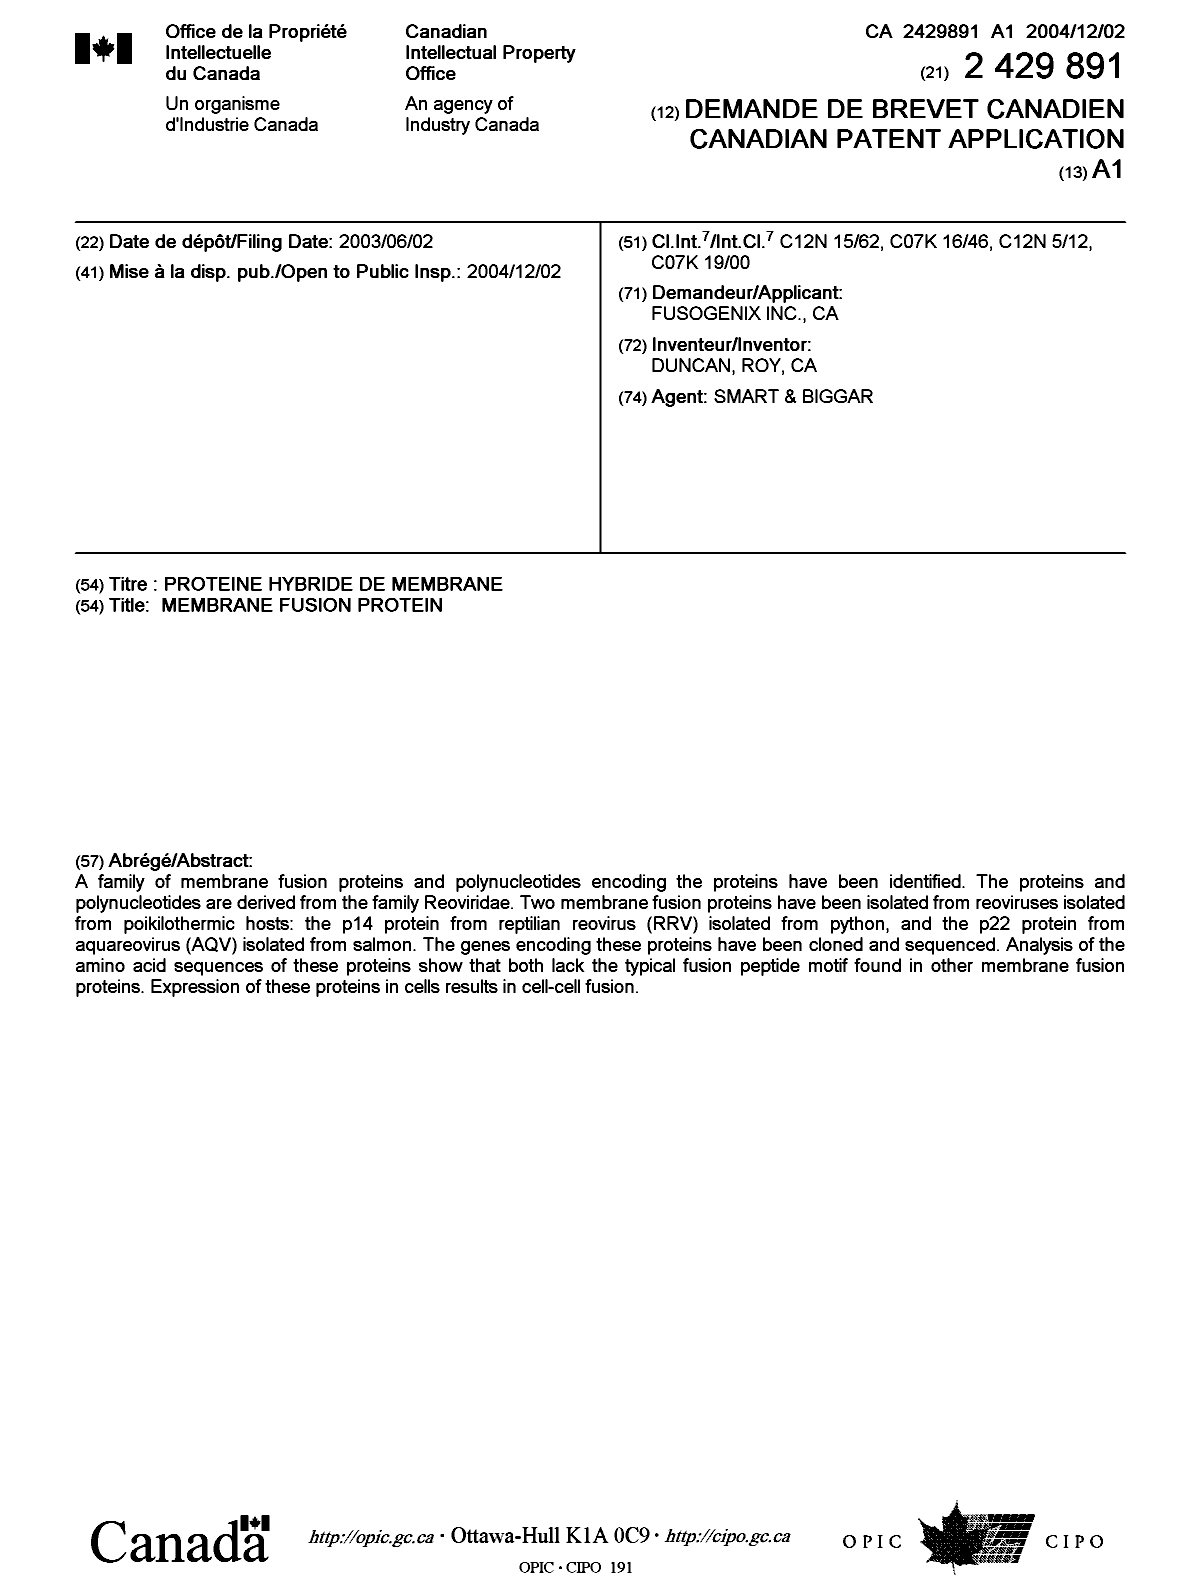 Document de brevet canadien 2429891. Page couverture 20041109. Image 1 de 1